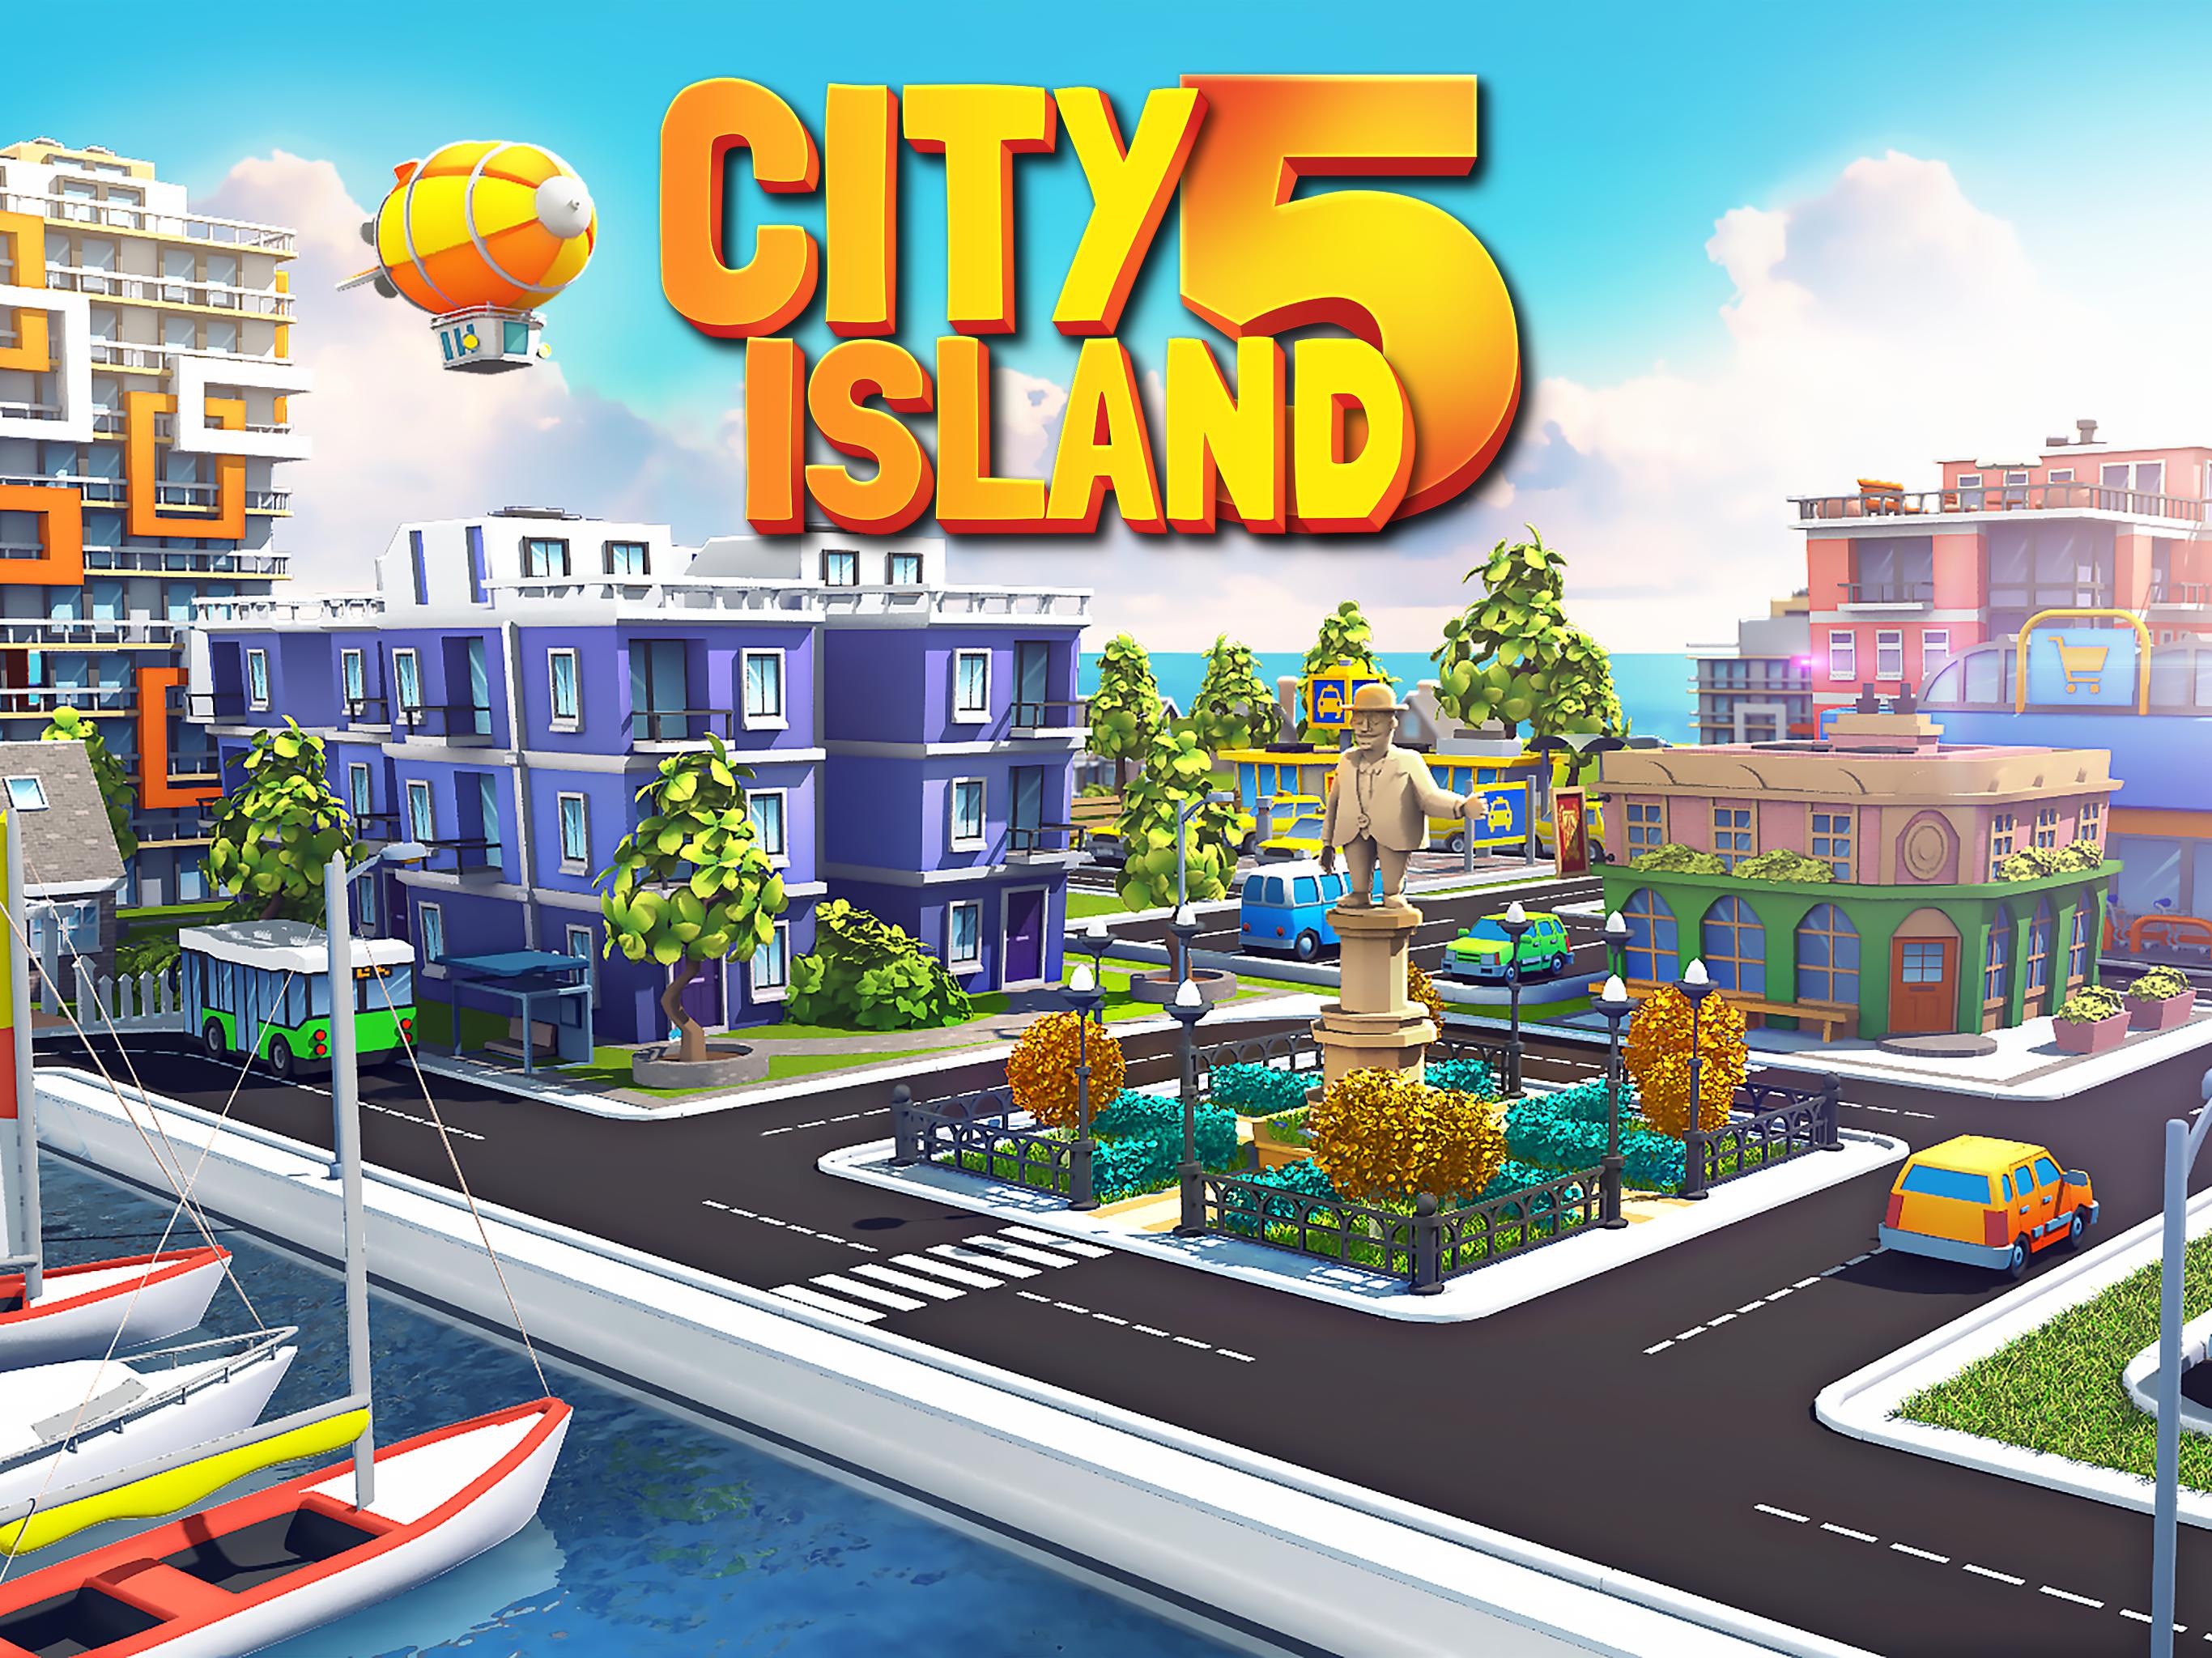 City island 1. Сити Исланд 5. Сити Исланд 6. City Island 5 - Tycoon building. City Island 2.